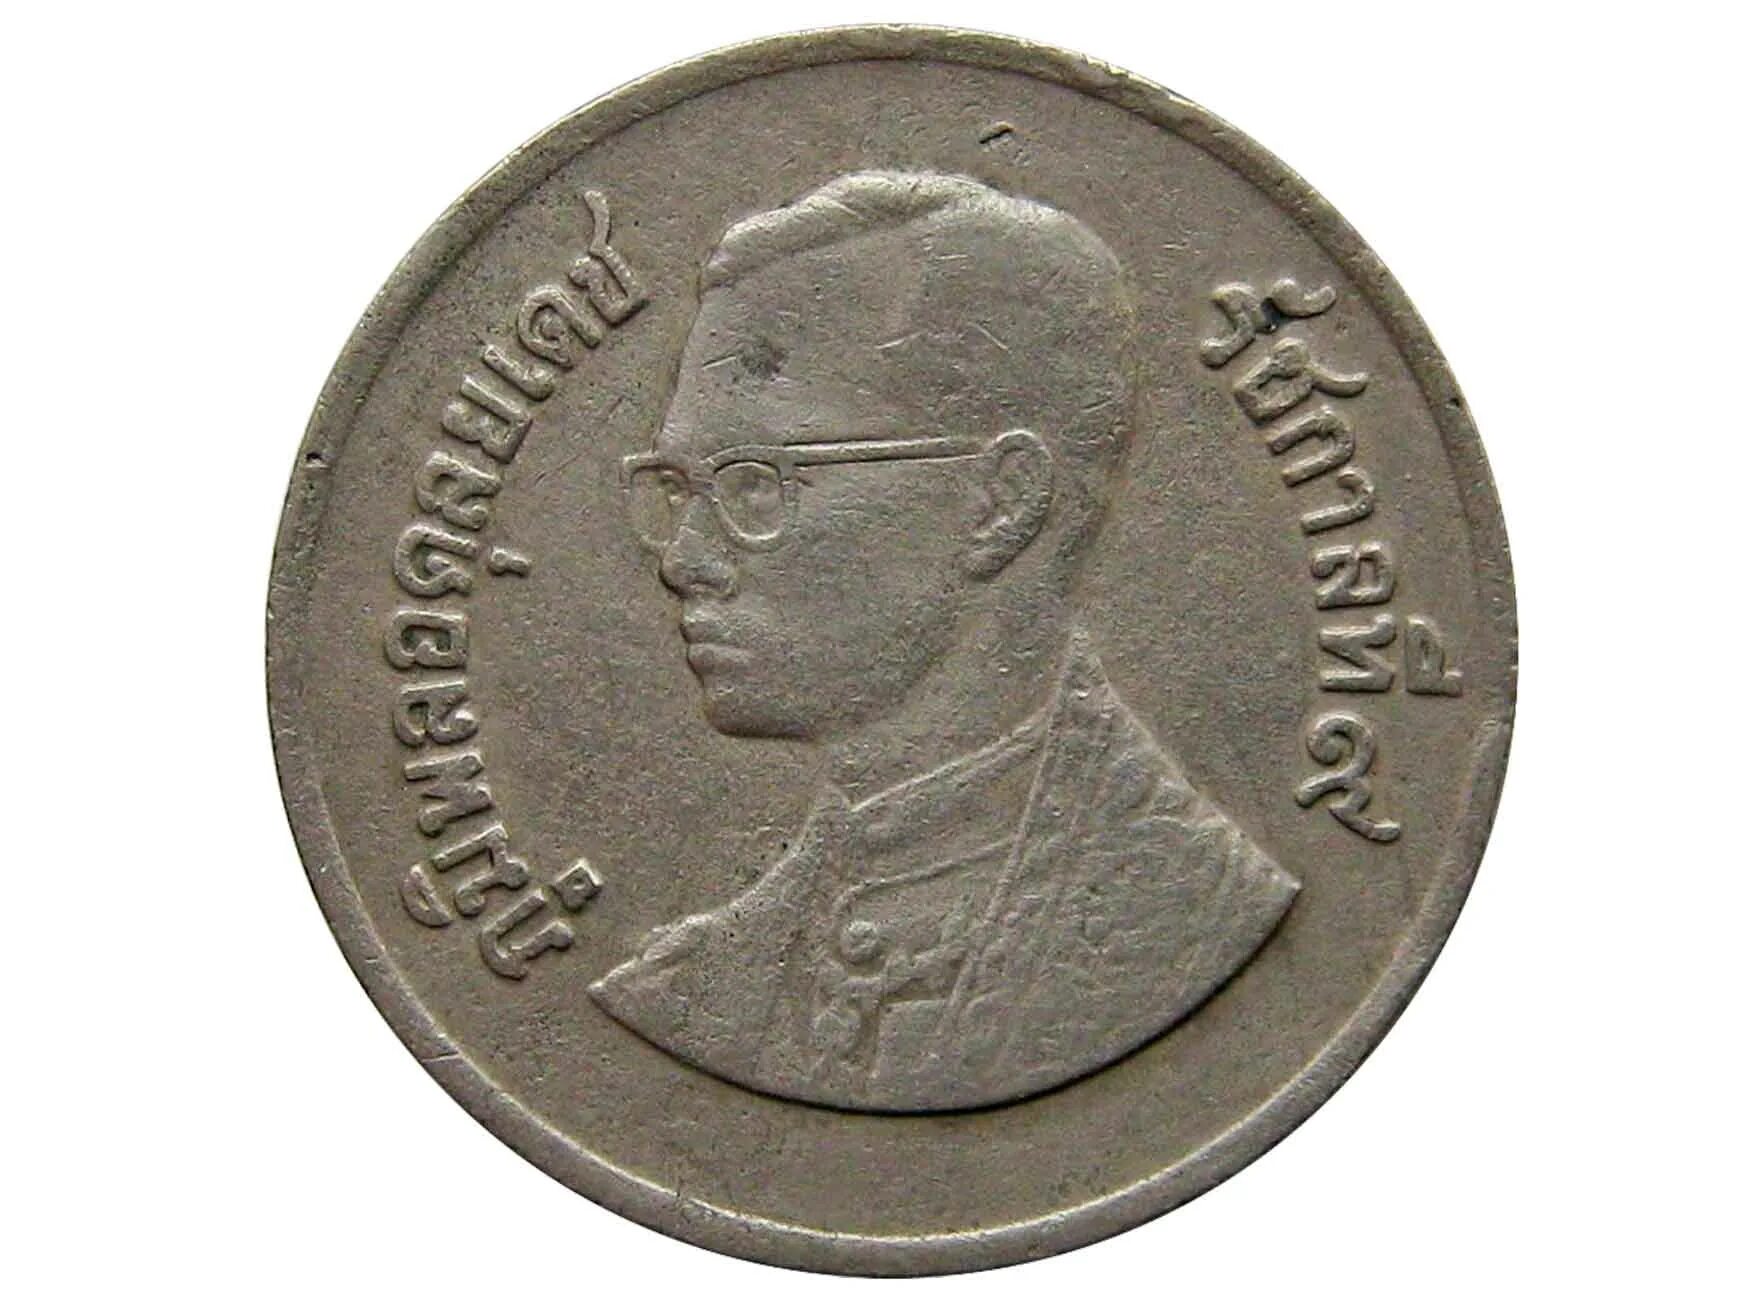 1 Бат Таиланд. 1 Бат монета. 1 Бат 1986-2008 Таиланд. Монета Тайланд 1 бат 1993. 15000 батов в рублях